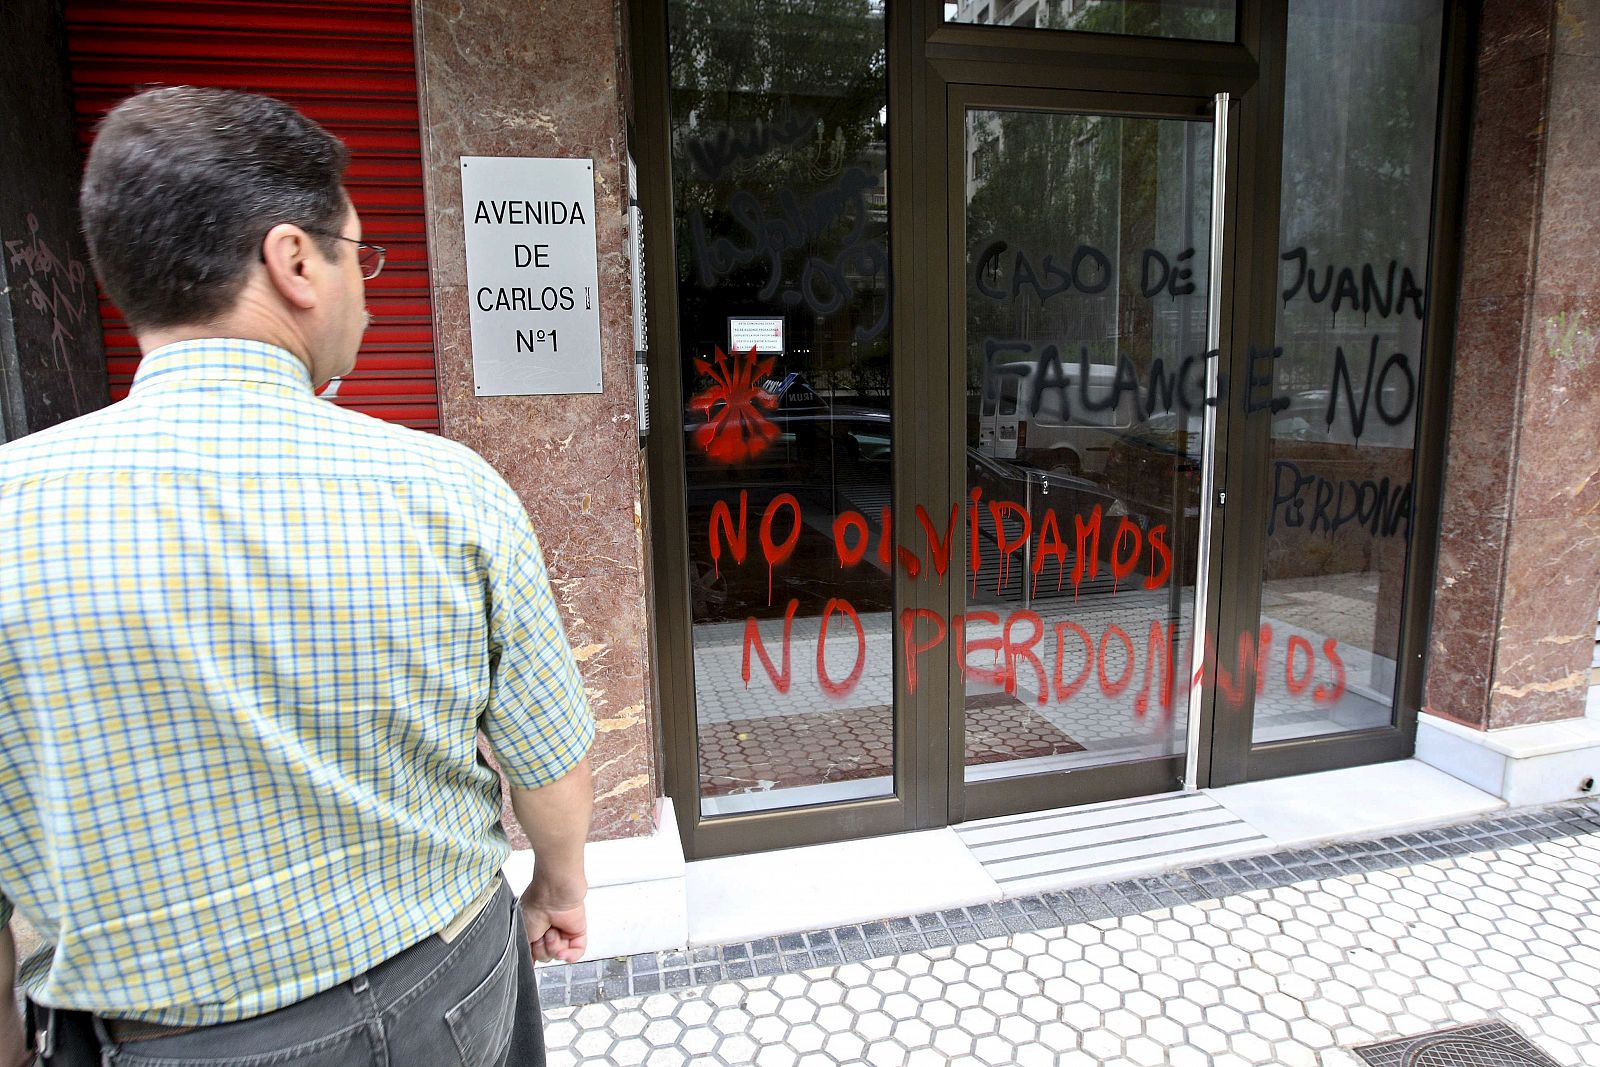 El portal de la vivienda de San Sebastián a la que el preso de ETA Iñaki de Juana Chaos podría mudarse cuando sea puesto en libertad el próximo 2 de agosto, ha aparecido hoy pintado con frases en su contra firmadas por la Falange.